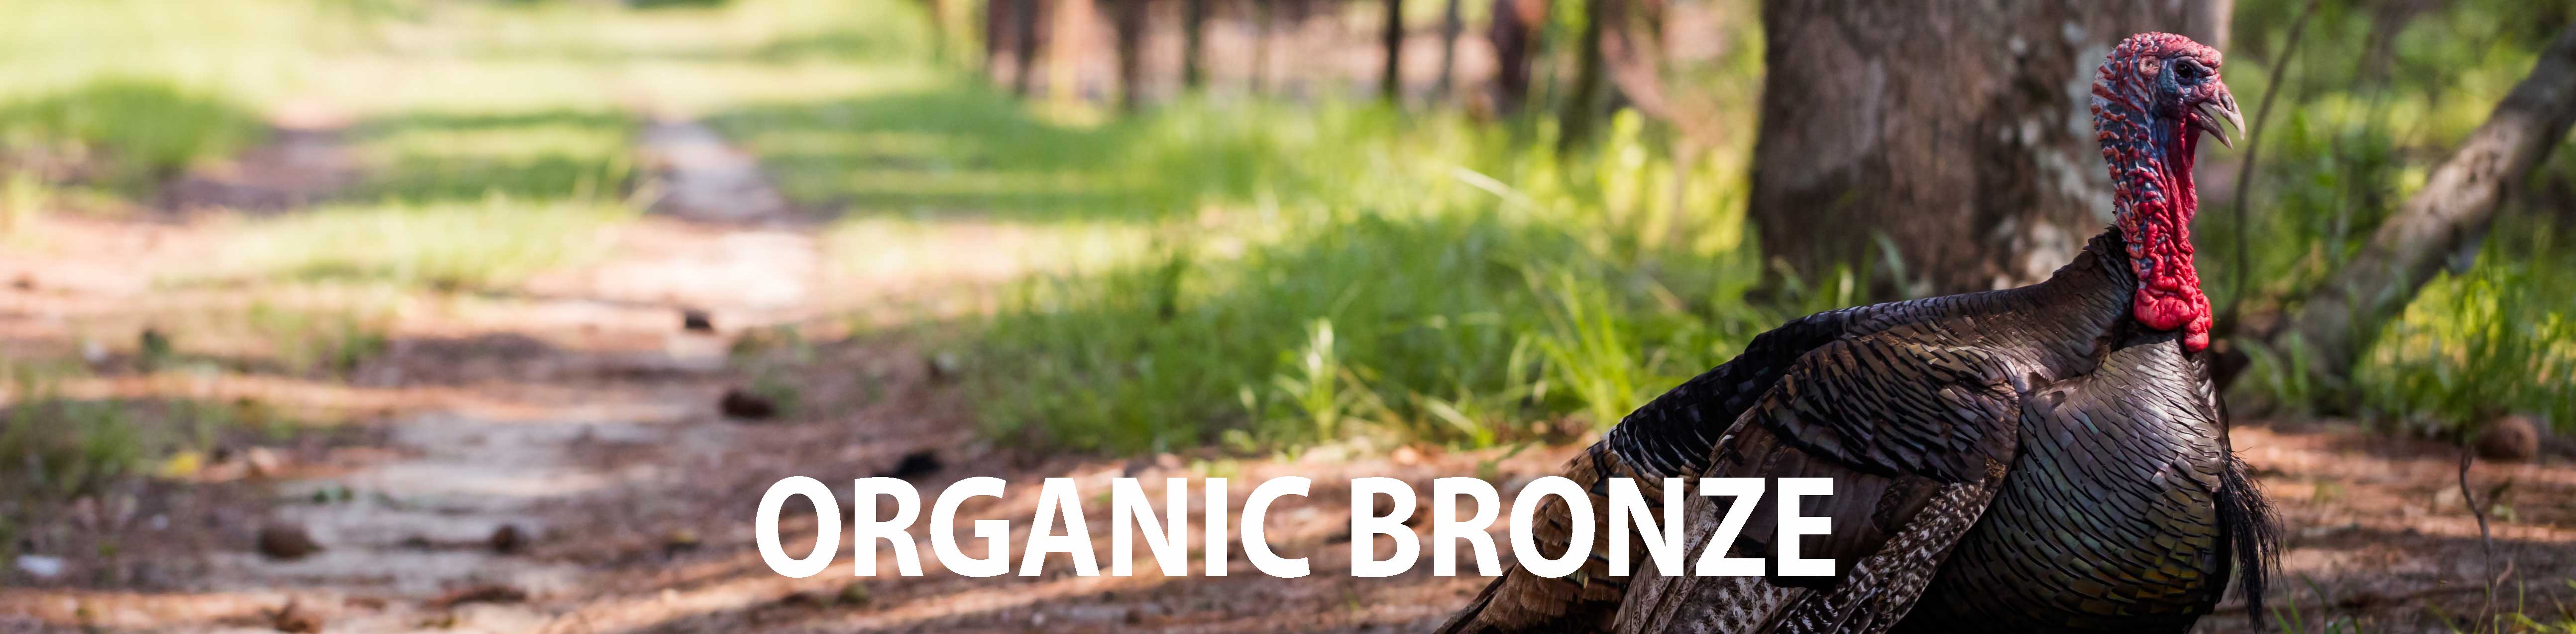 Organic Bronze